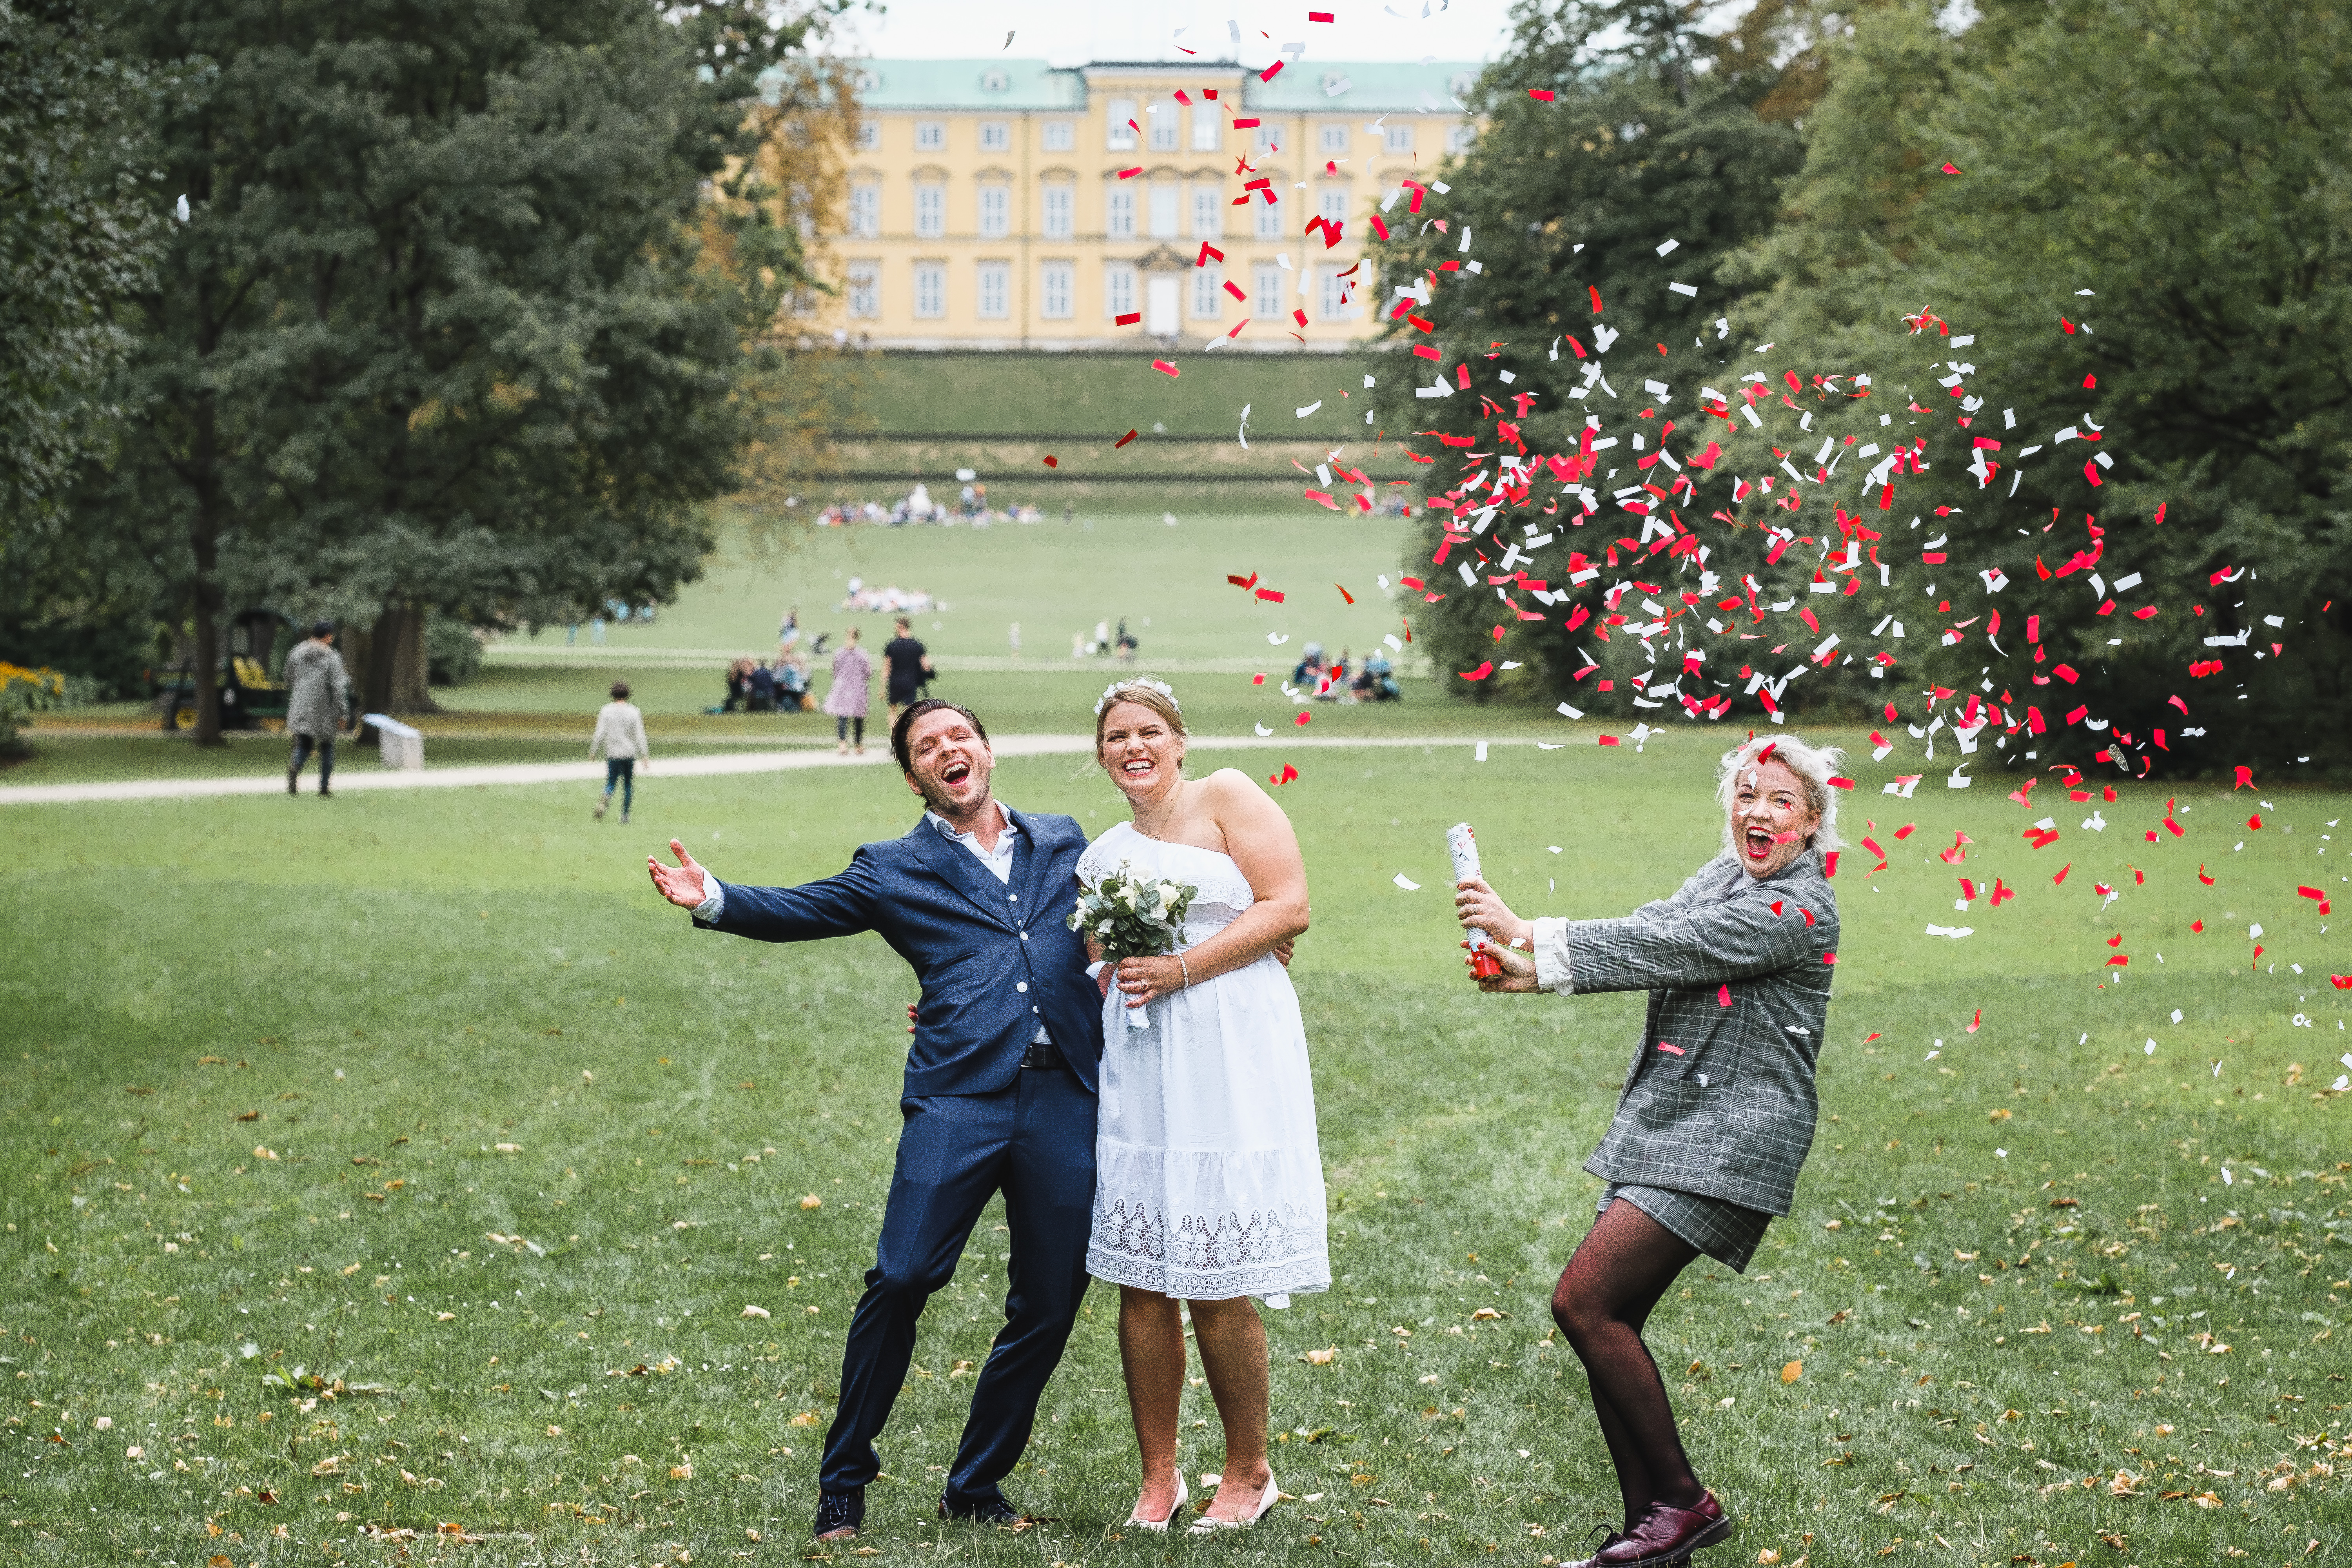 Local Round-Up: Neuer Rekord unterstreicht Kopenhagens Ruf als Heiratshauptstadt der Welt